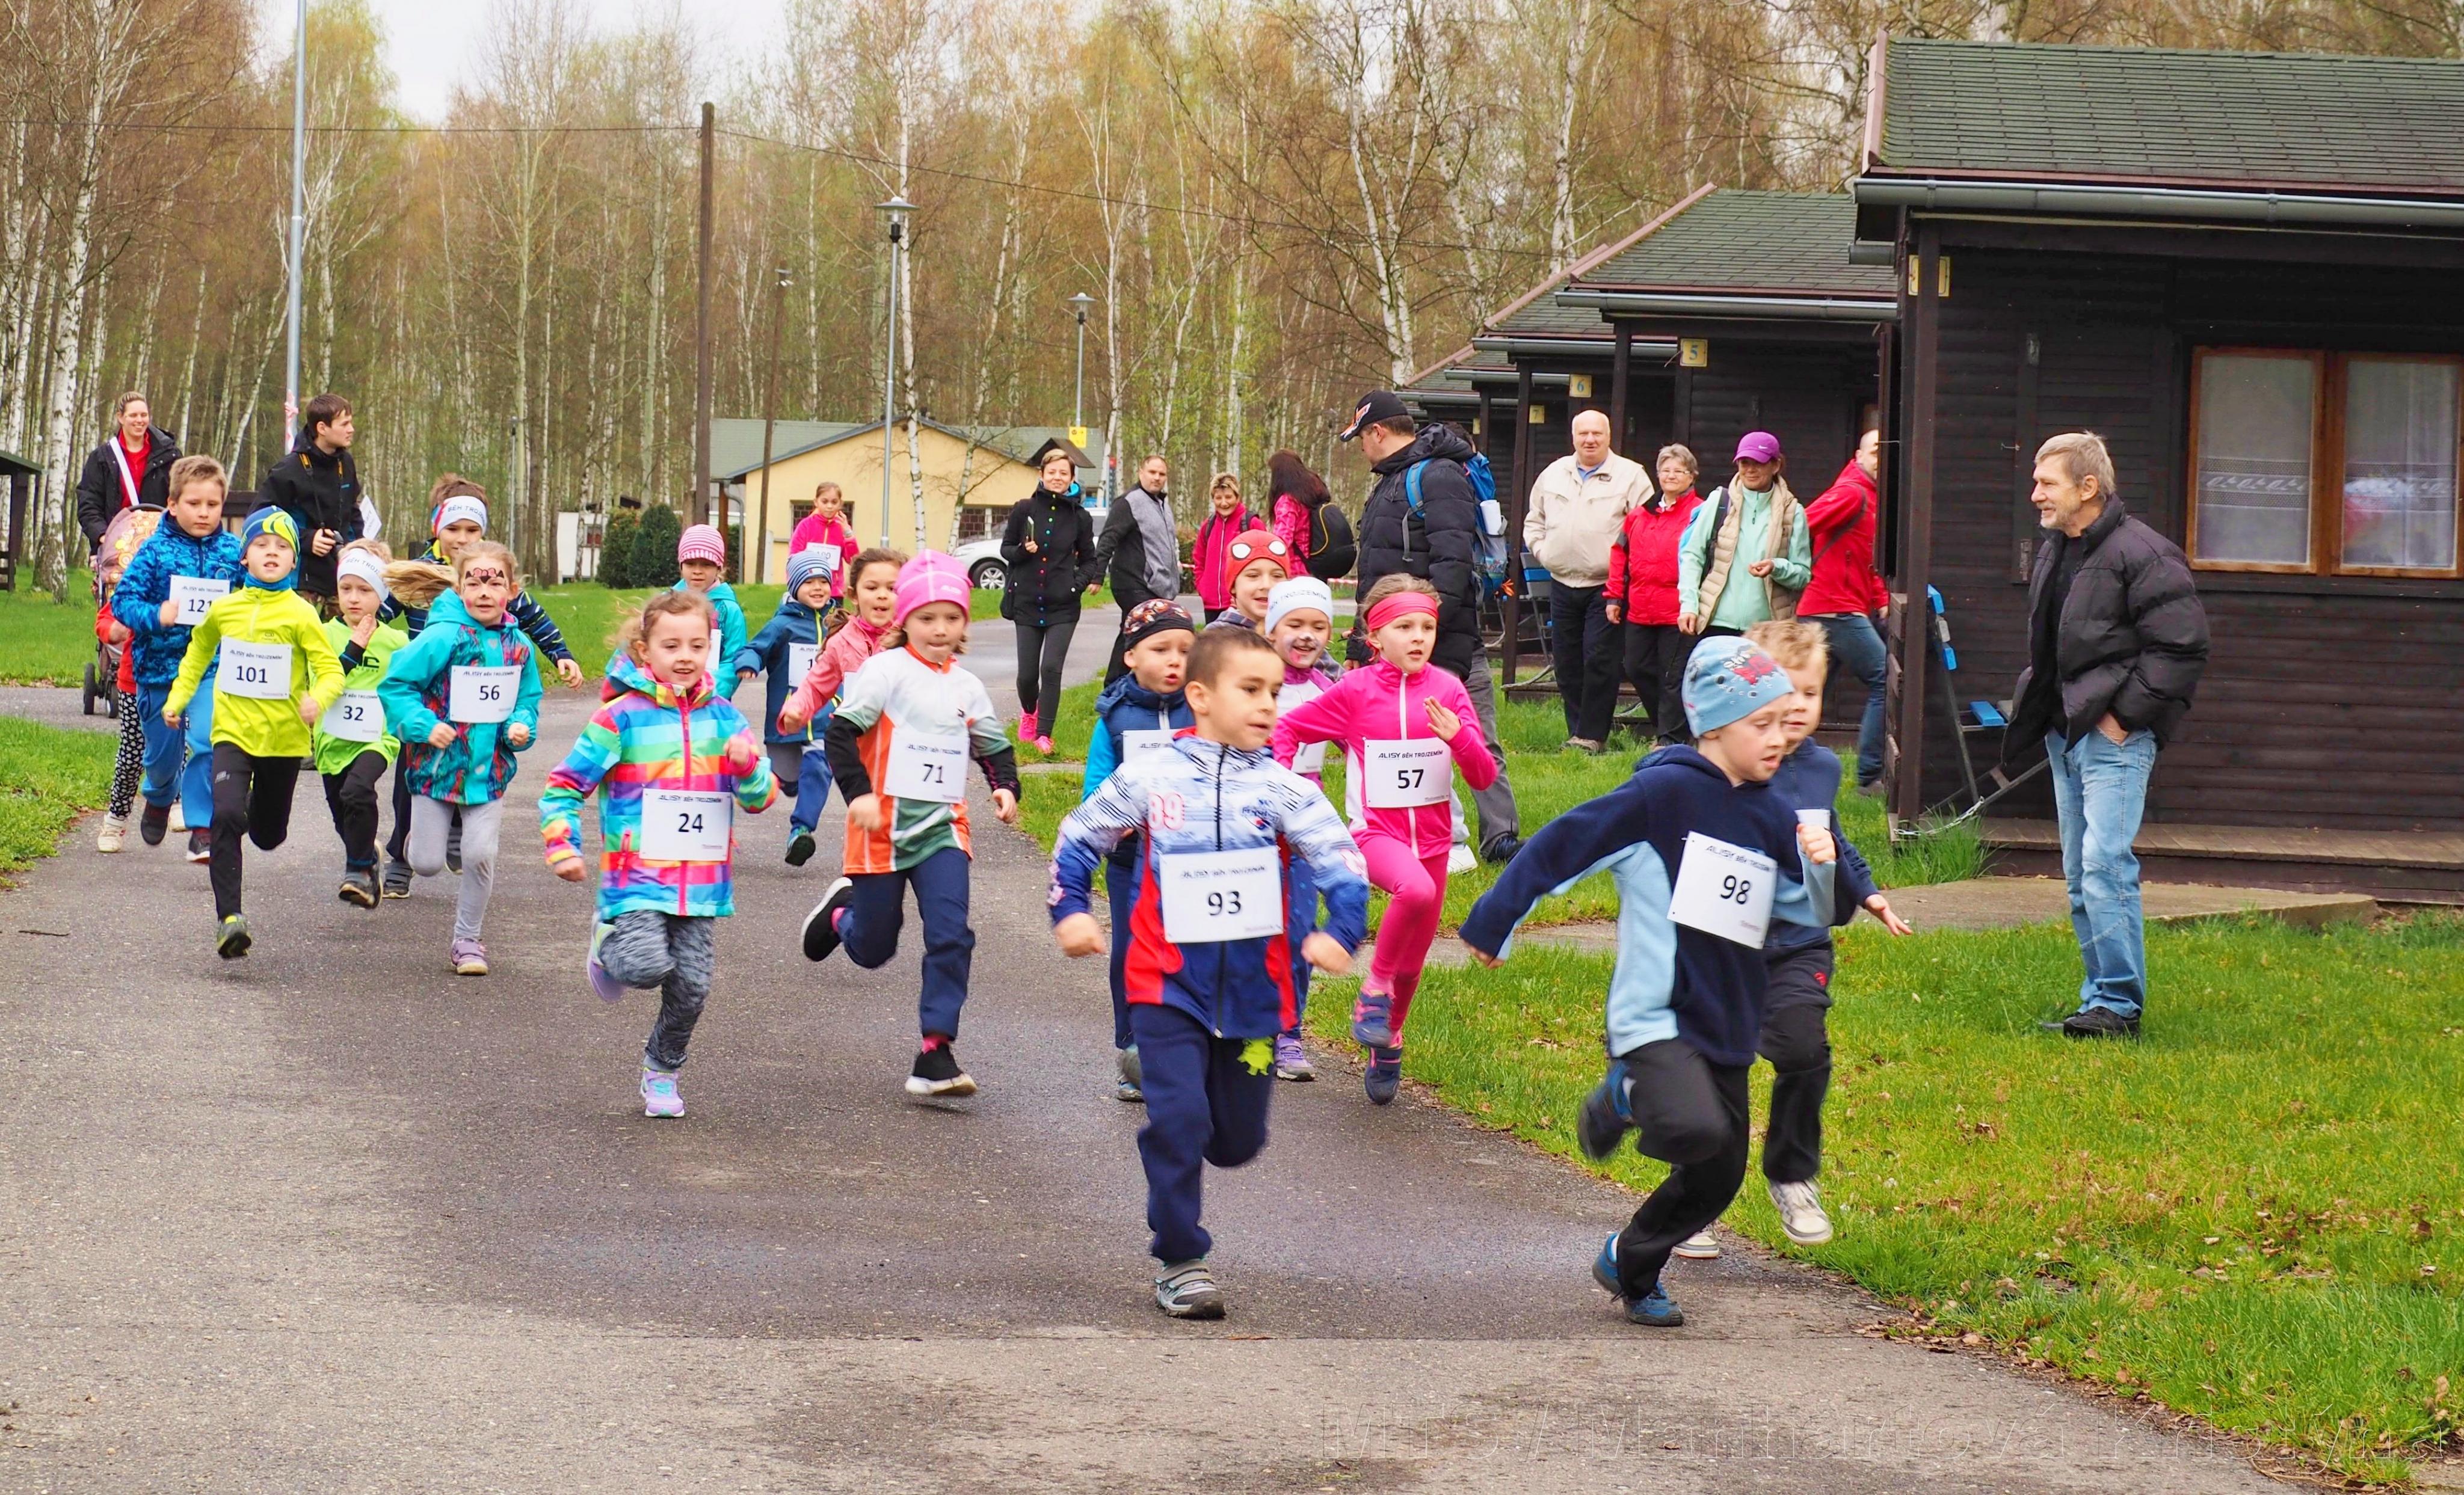 Malí závodníci na Alisy Běhu trojzemím 2017, stejně tak letos dostanou prostor k běžeckému závodění i ti nejmenší